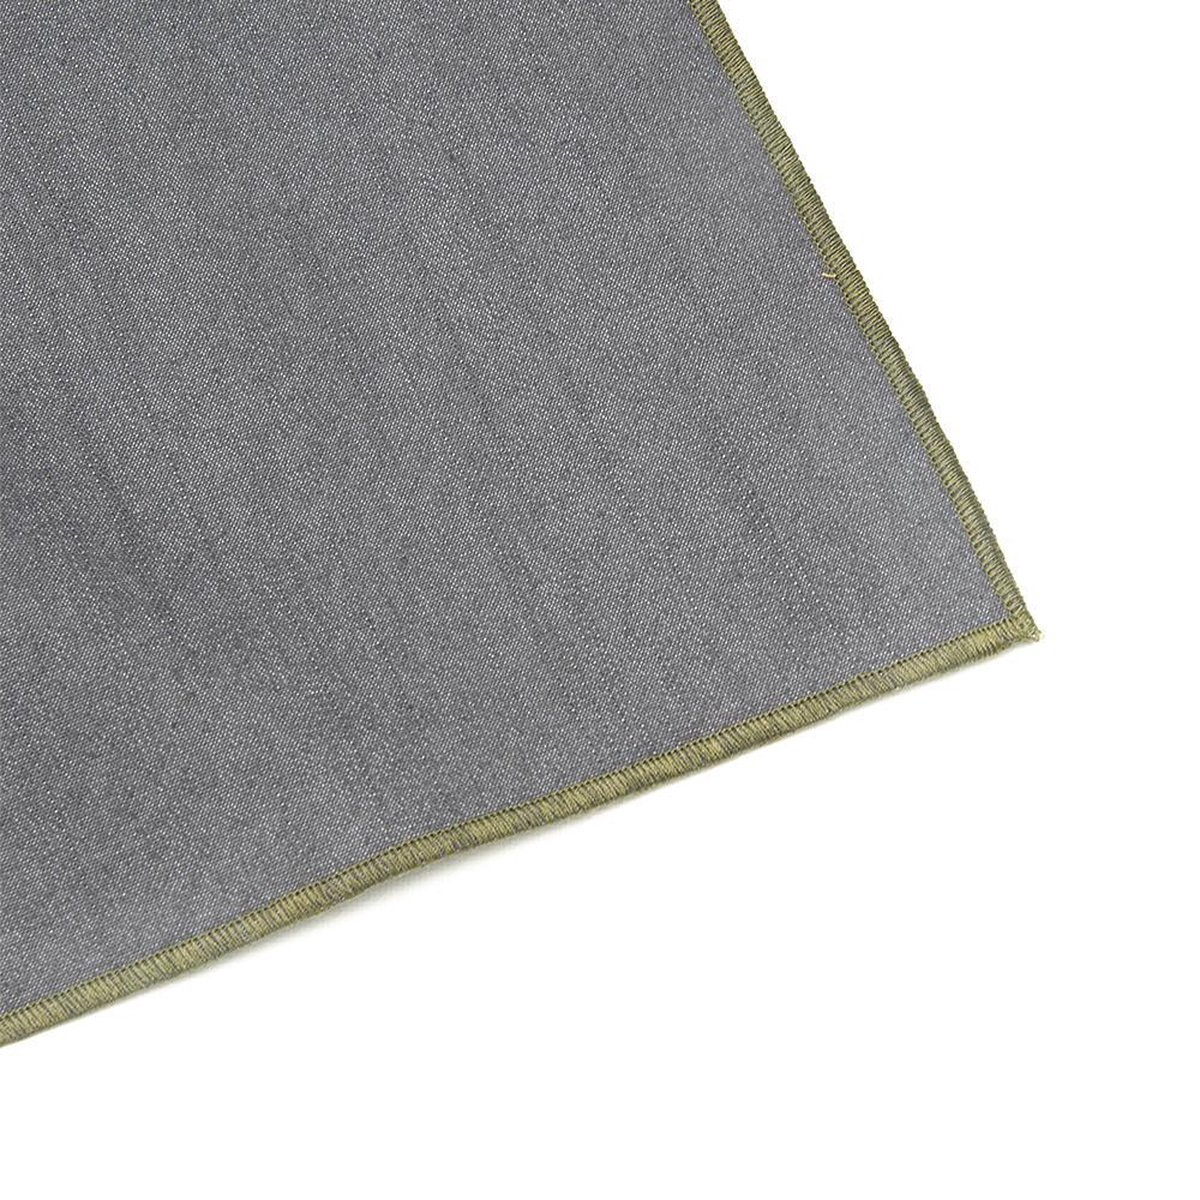 Denim grijs tafelkleed - met groene rand -Bliek Tof Tafelen - 140x250 cm